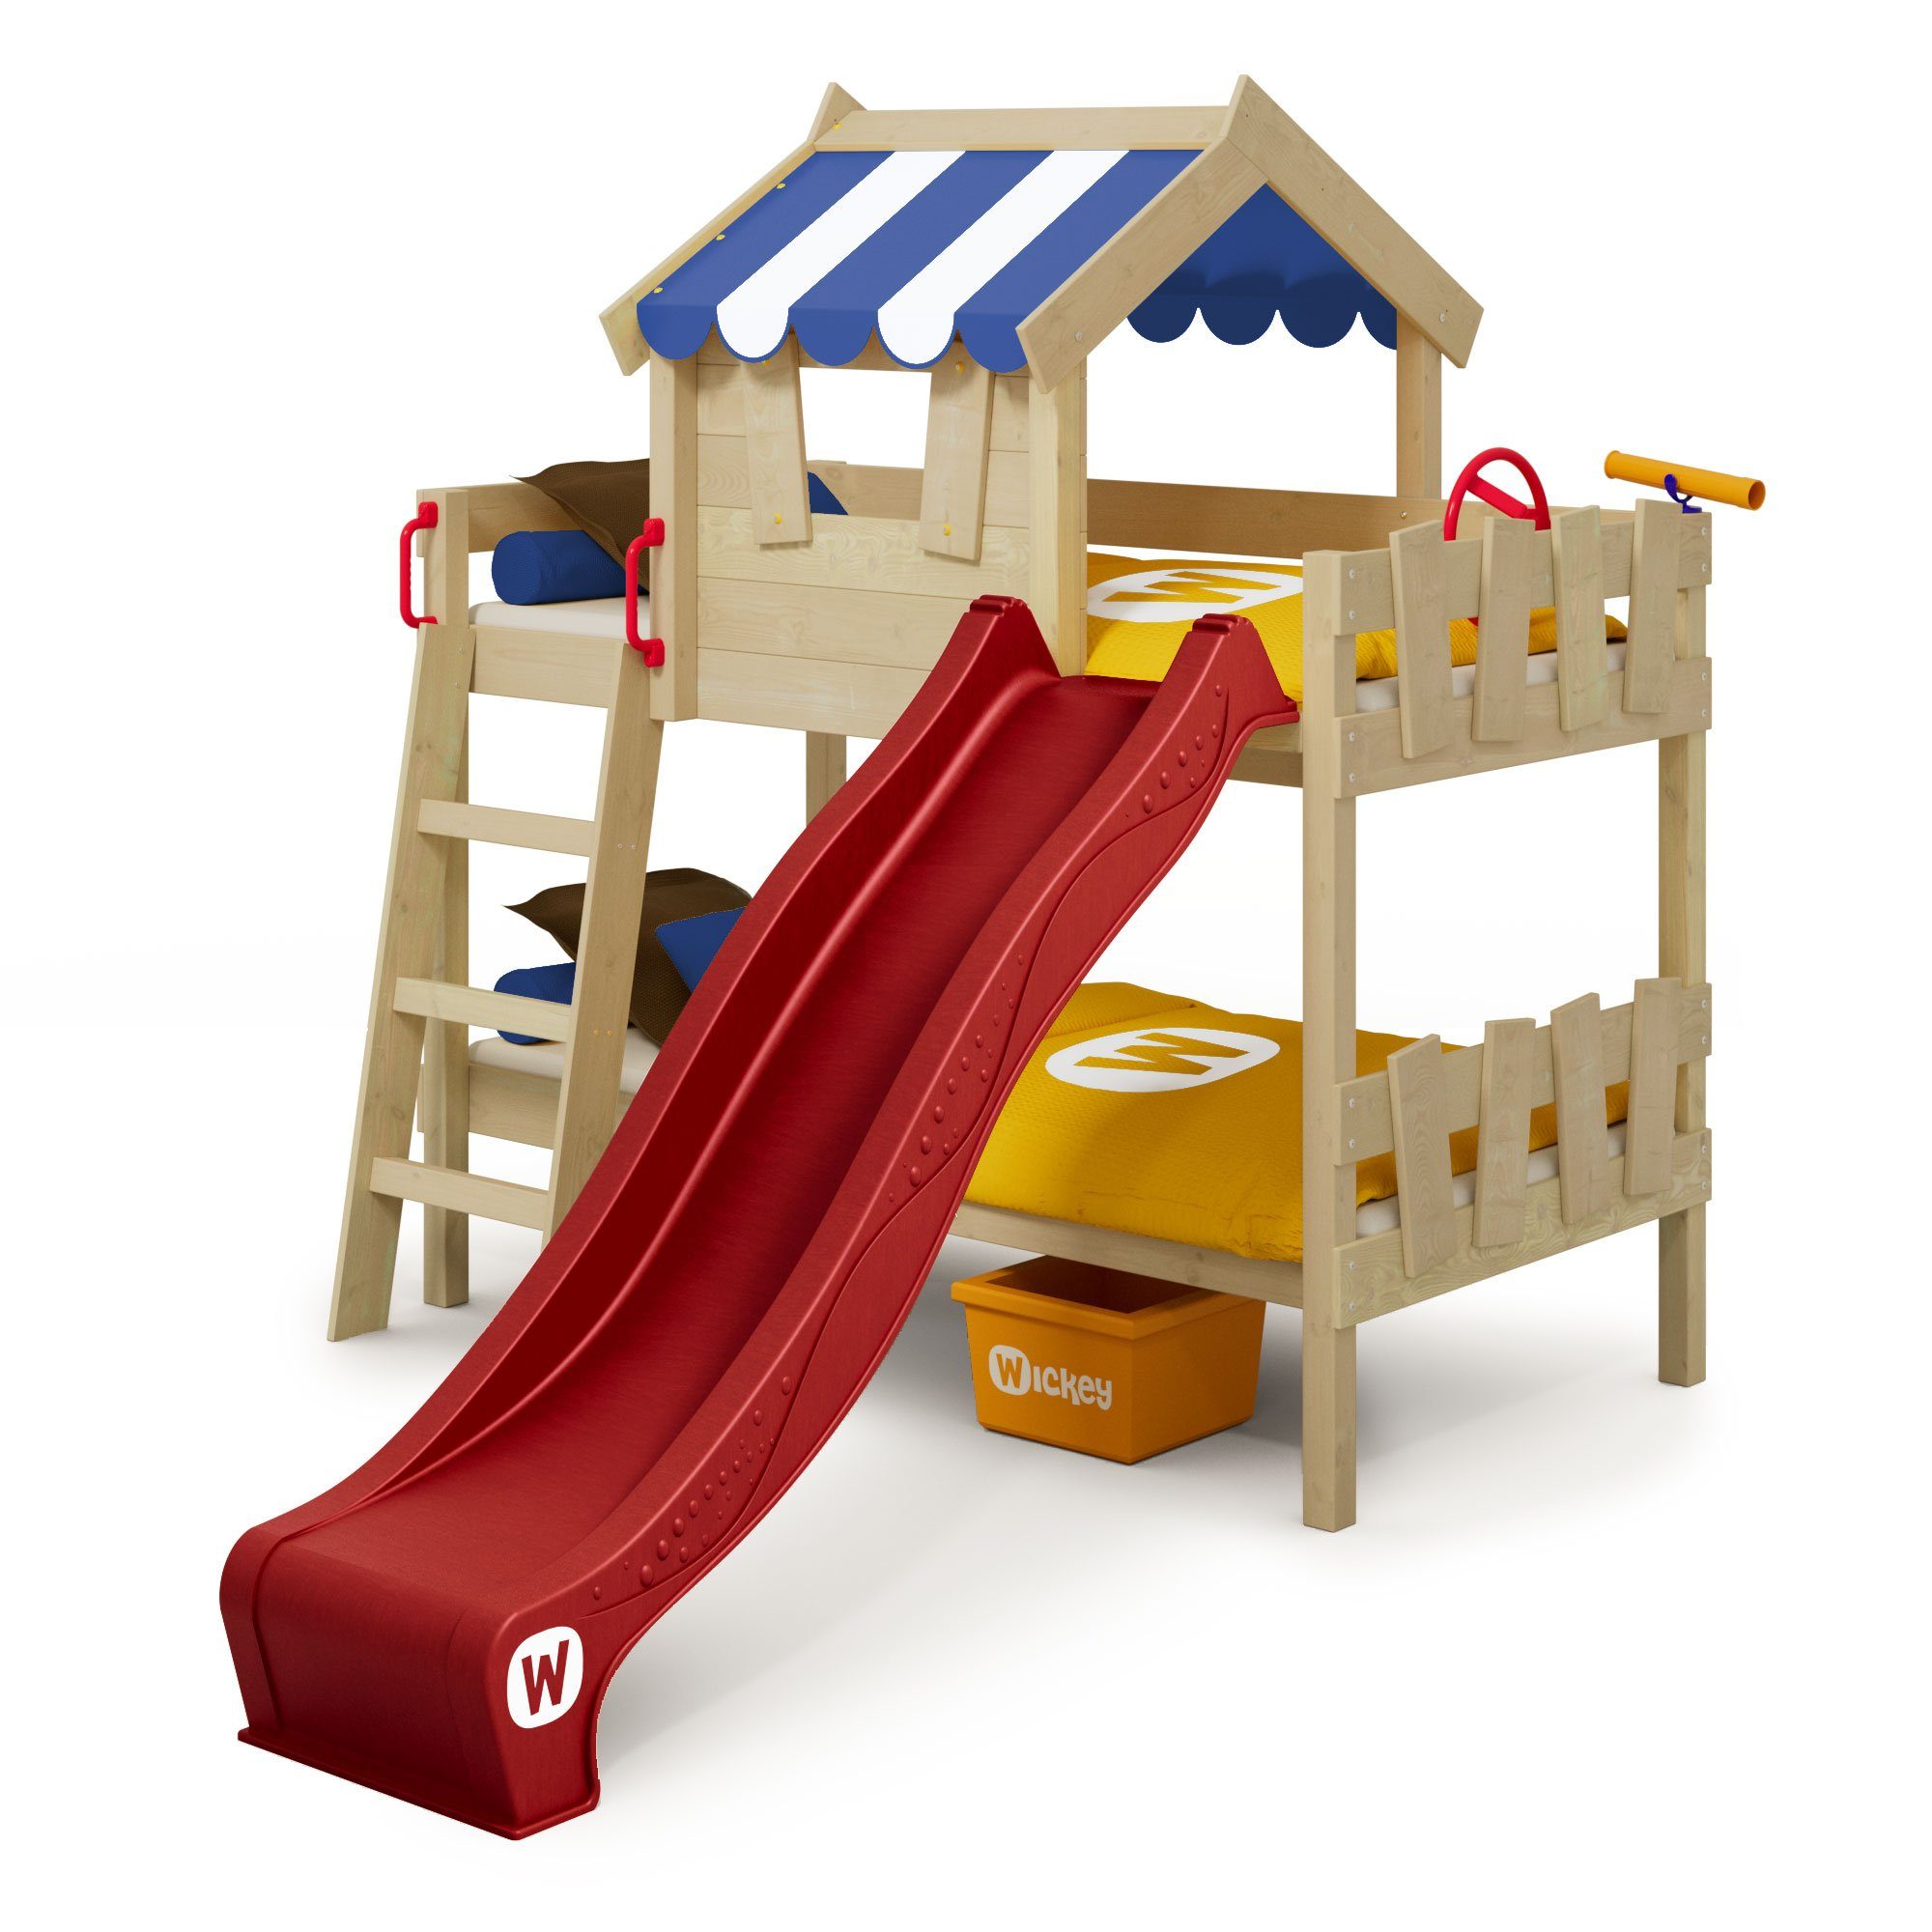 Wickey Kinderbett Crazy Circus - Spielbett mit Rutsche, Etagenbett - 90 x 200 cm (Holzpaket aus Pfosten und Brettern, Spielbett für Kinder), Massivholzbrett rot/blau